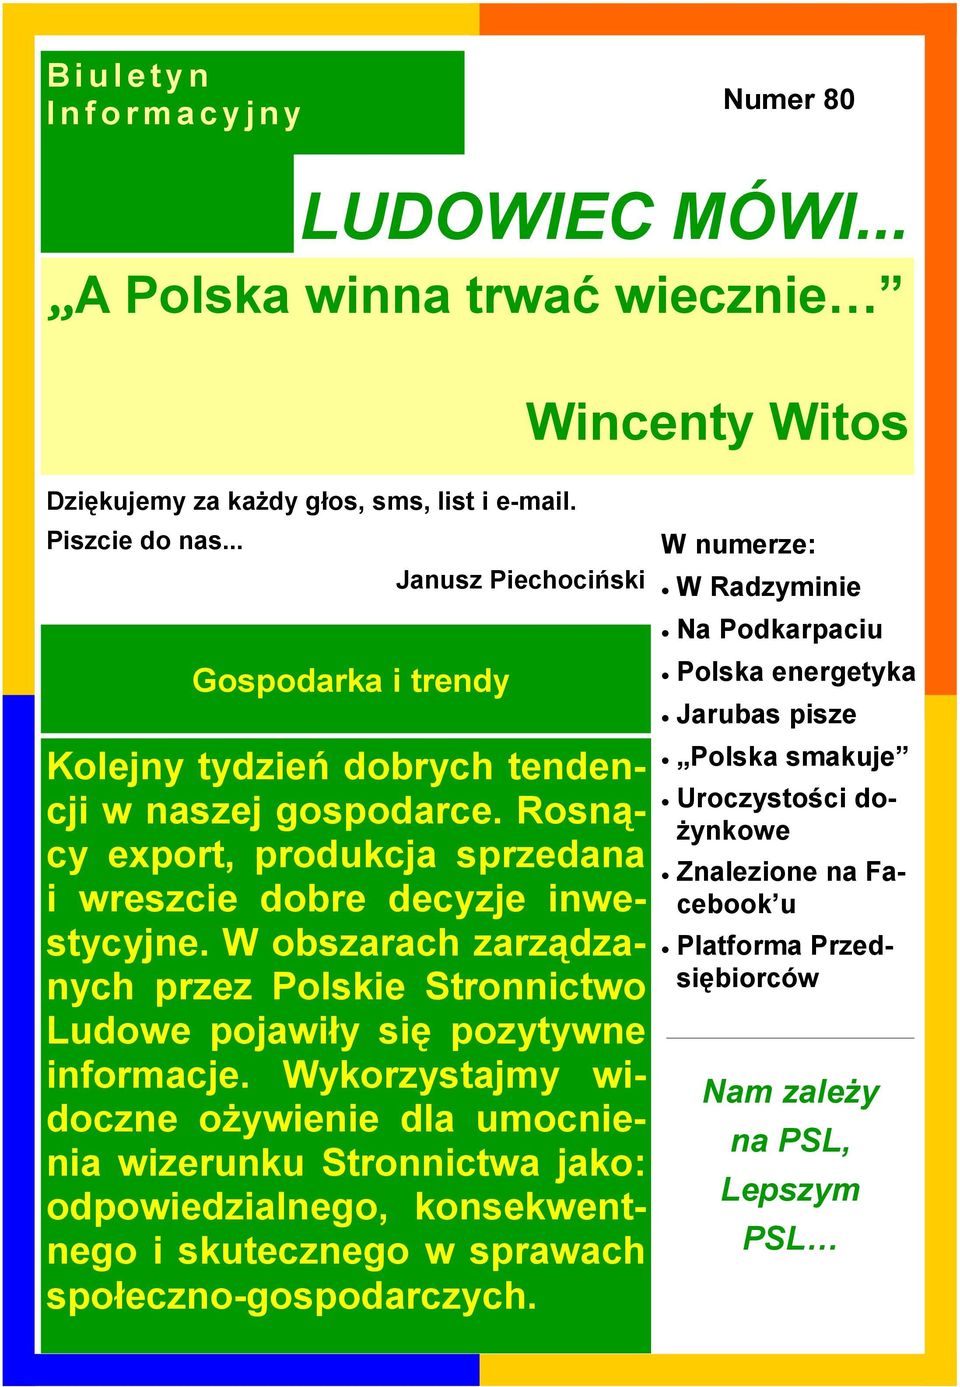 W obszarach zarządzanych przez Polskie Stronnictwo Ludowe pojawiły się pozytywne informacje.